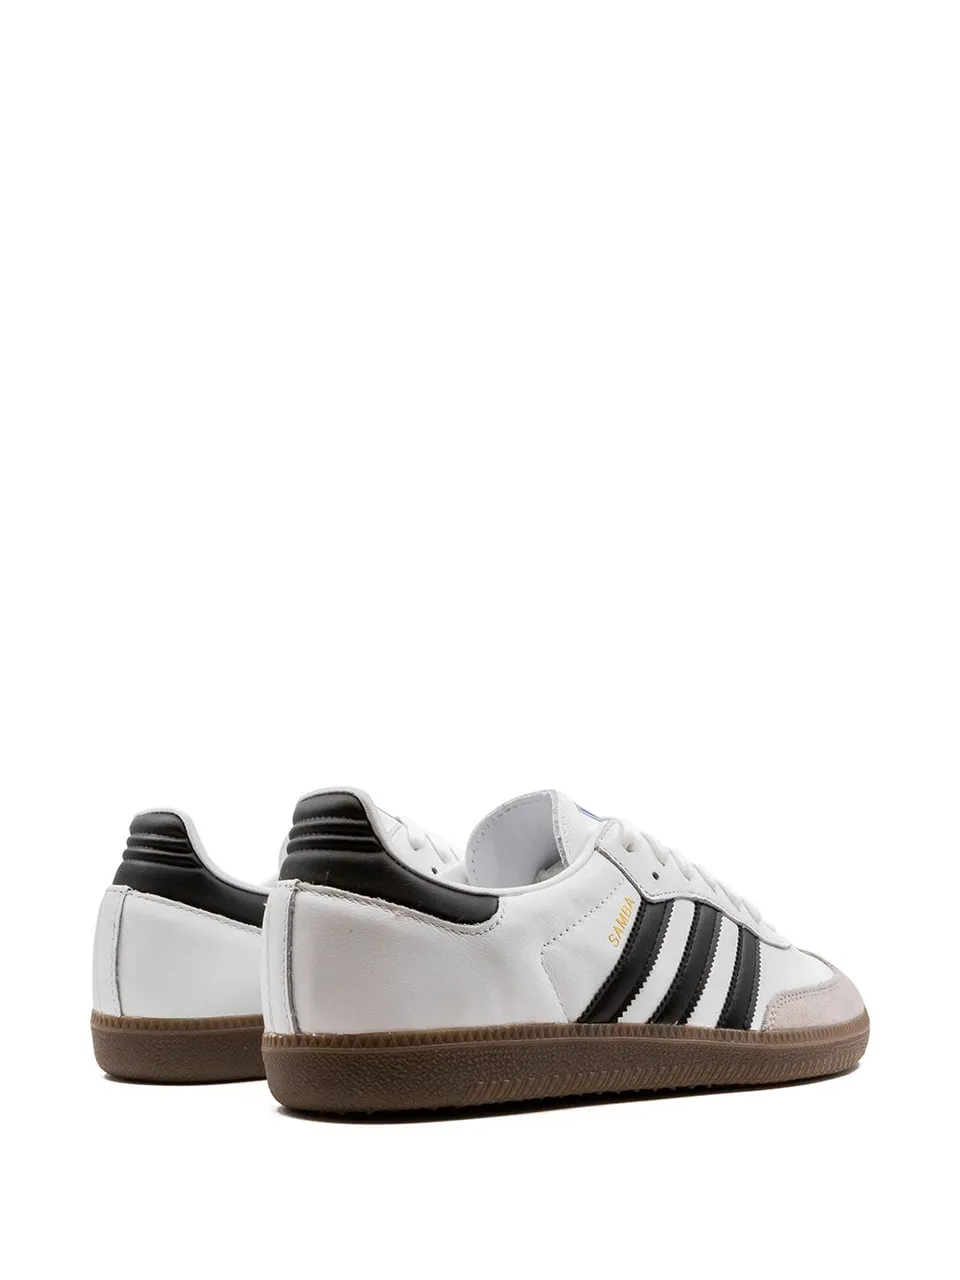 adidas Samba OG "White/Black" sneakers